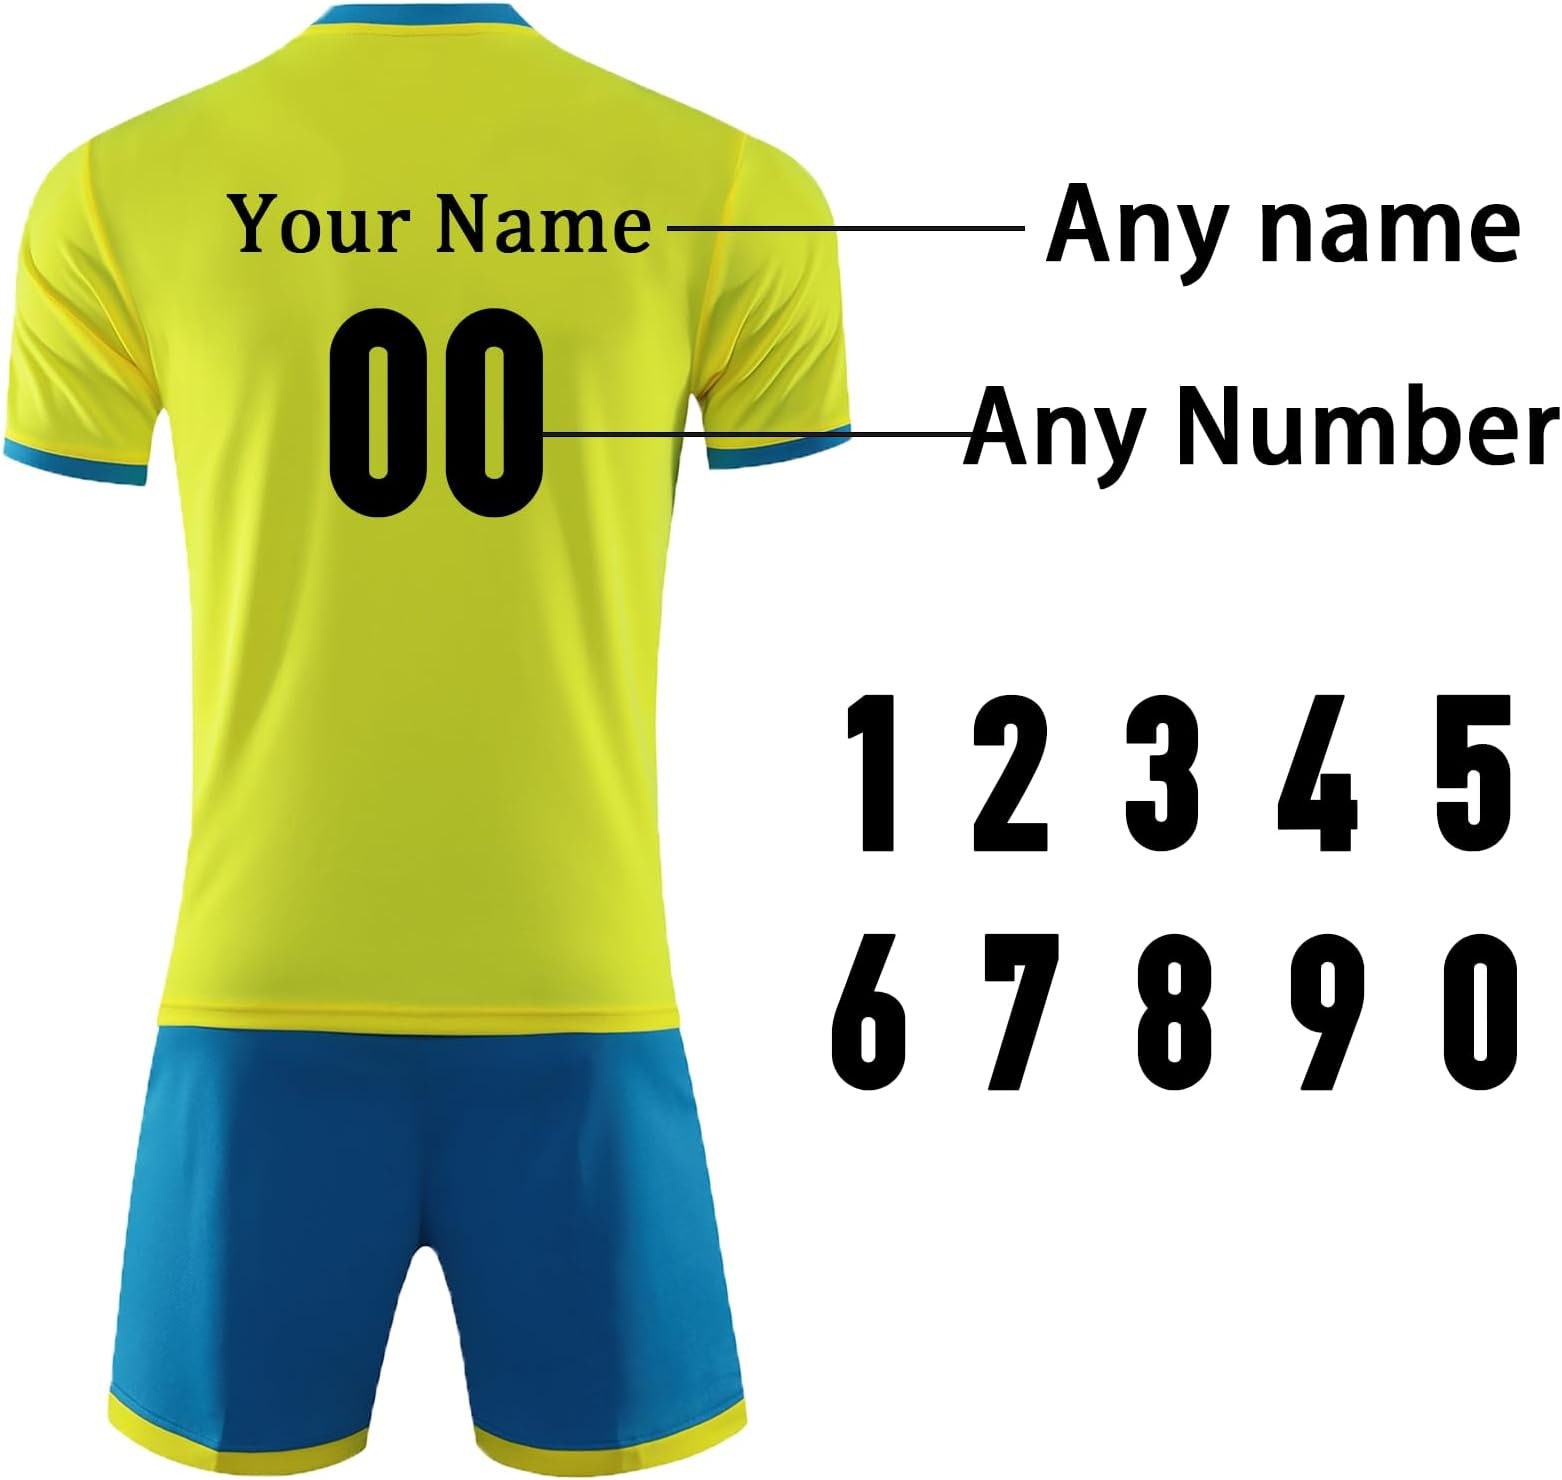 Discover Conjunto de Fútbol Personalizados Uniforme Azul Amarillo, Camisetas Personalizadas con Logotipo del Equipo del Número y Nombre